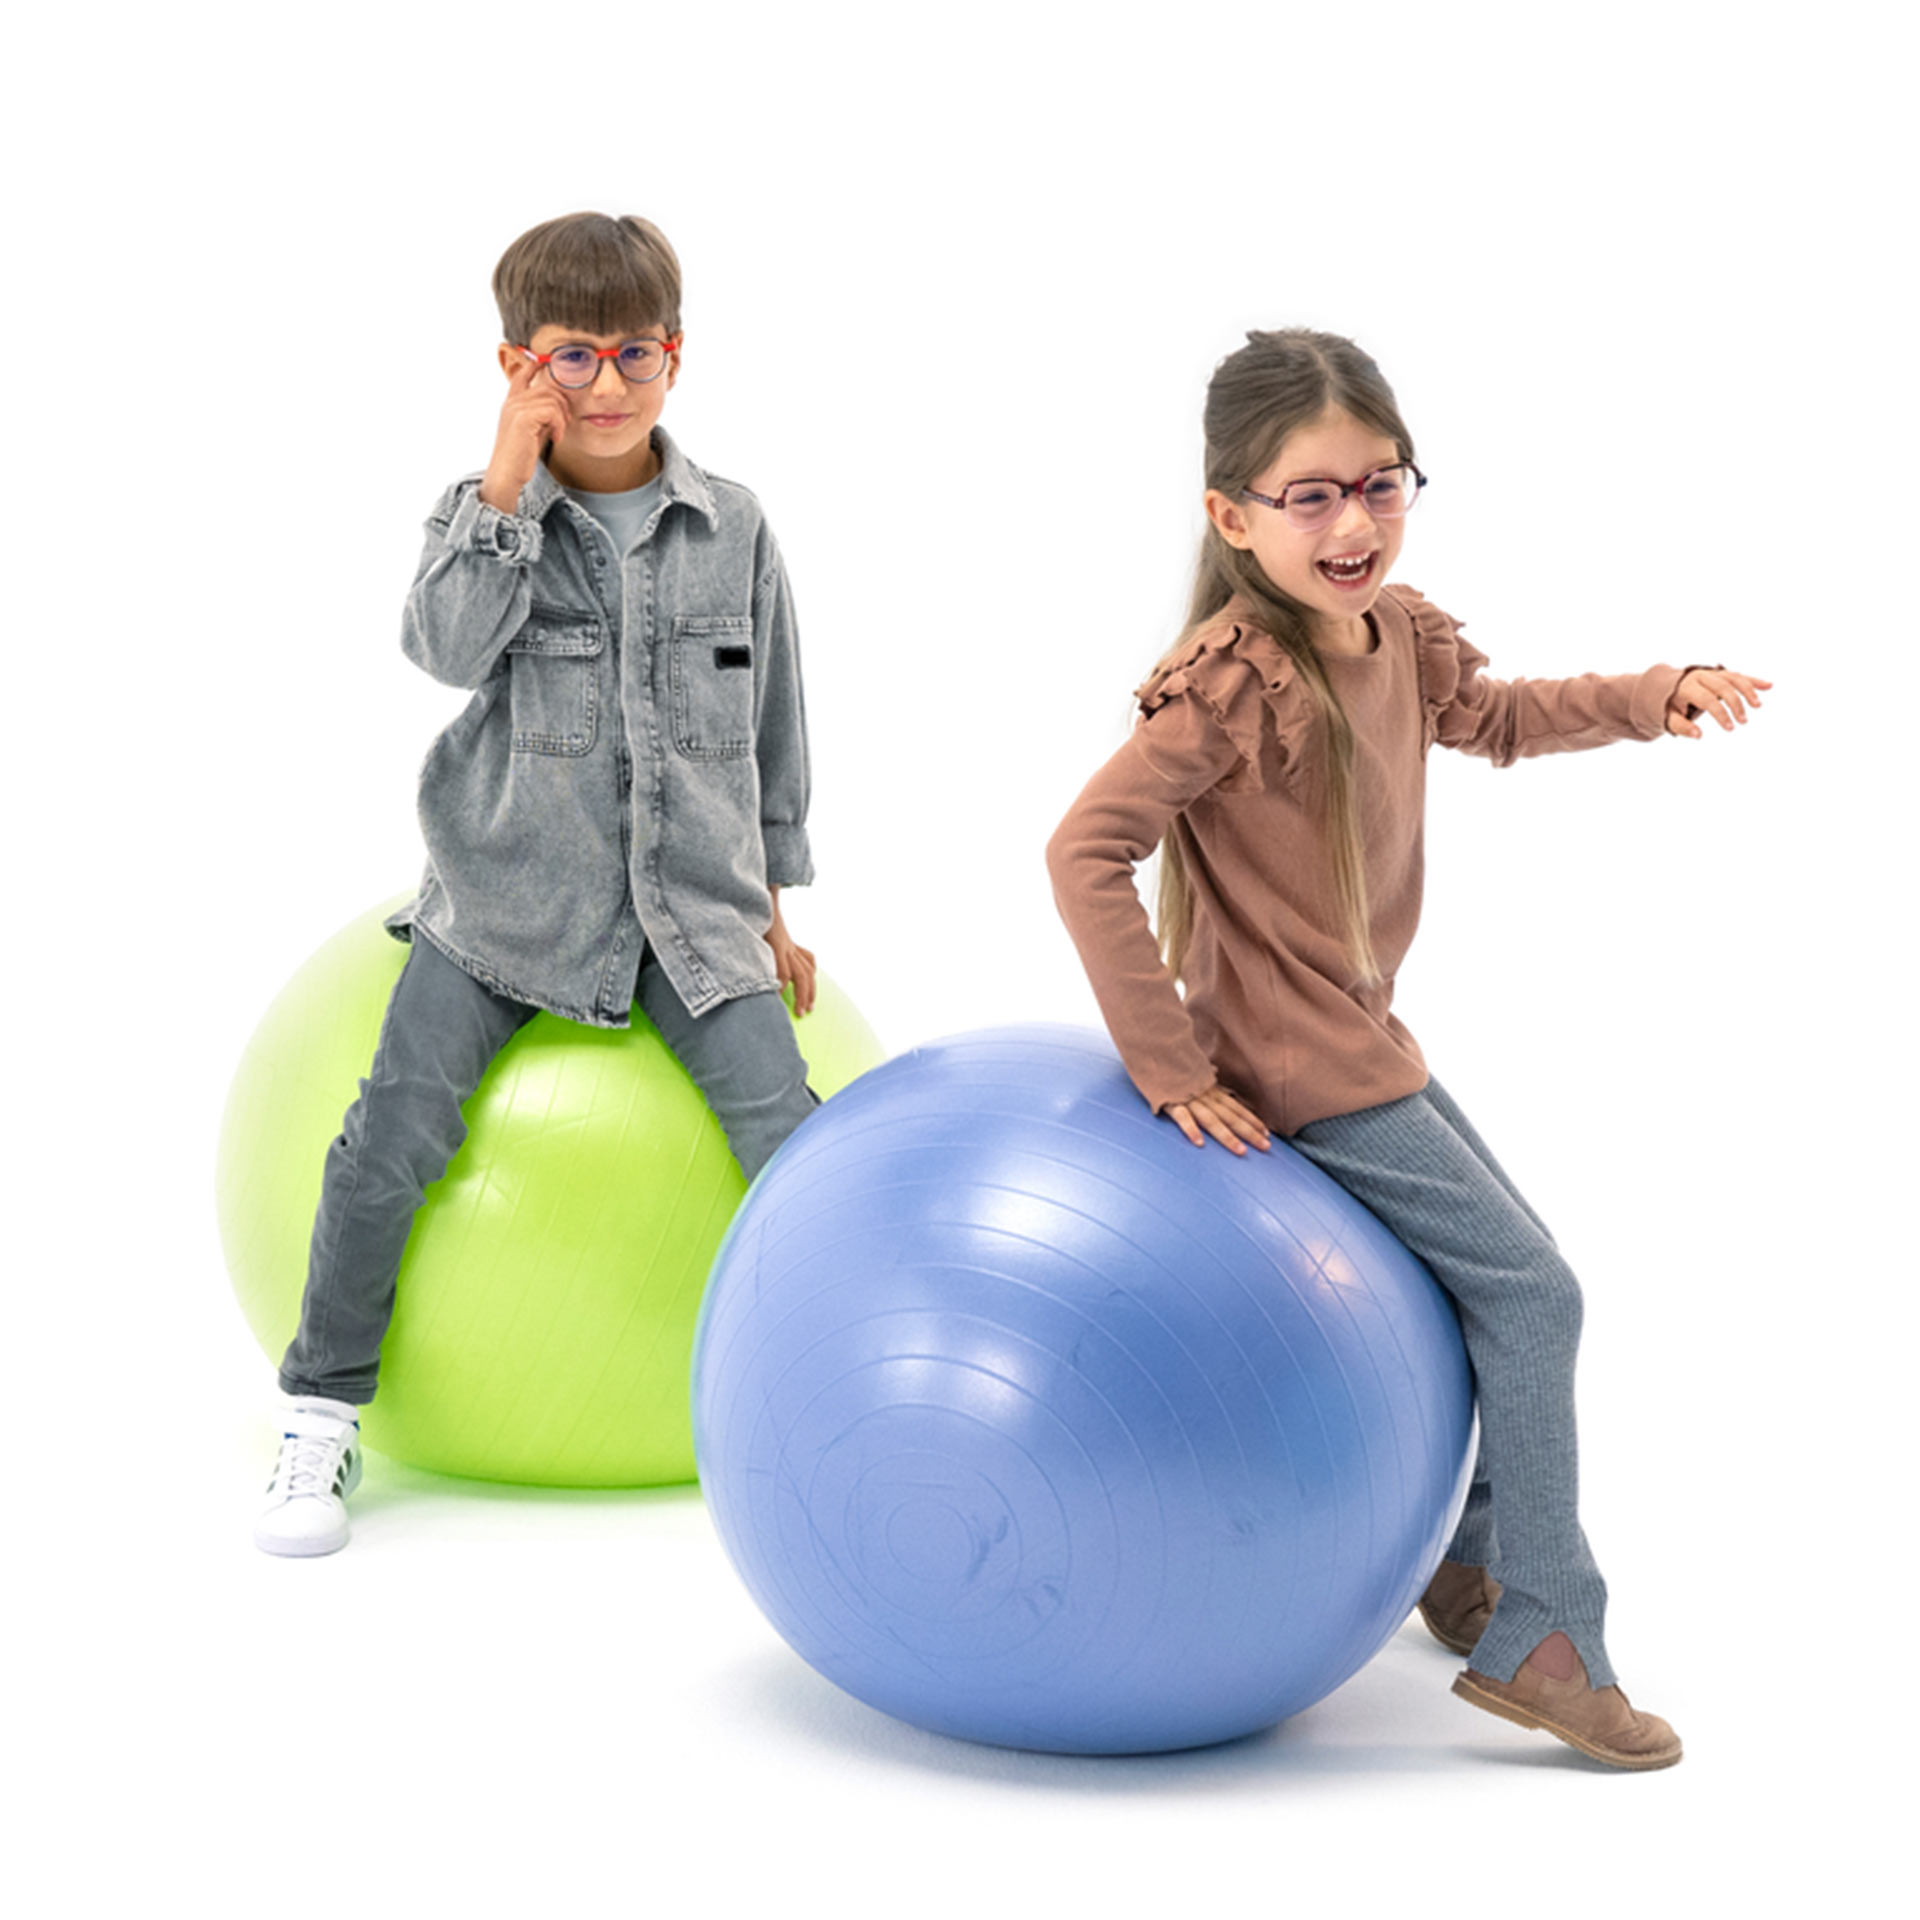 안경을 쓴 소년과 소녀가 공에 앉아 장난을 치고 있다.